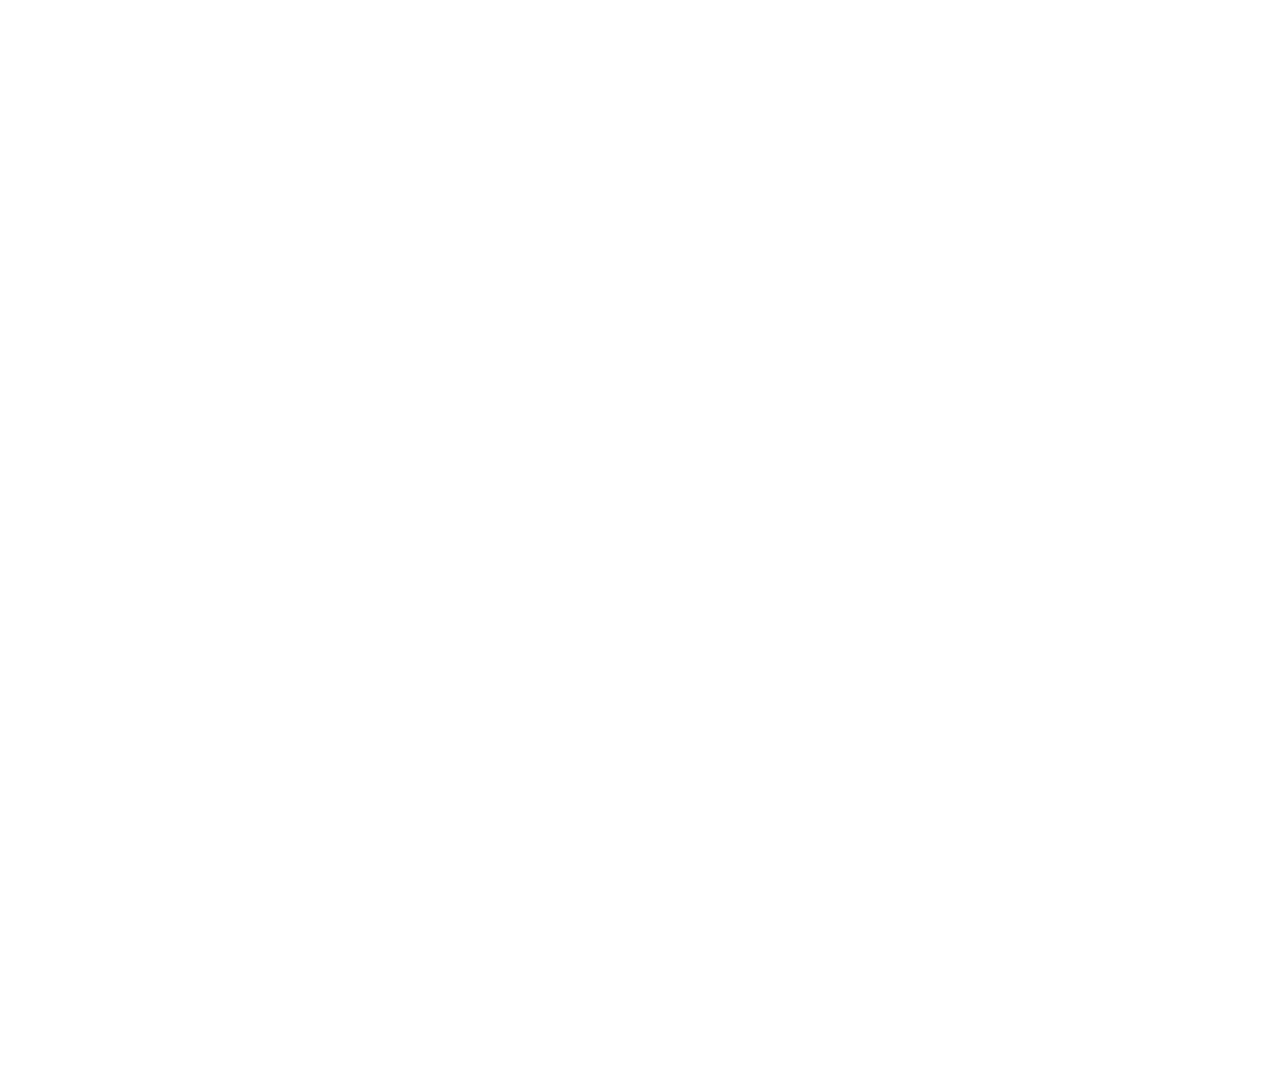 ZAMAL PROJECTS's logo